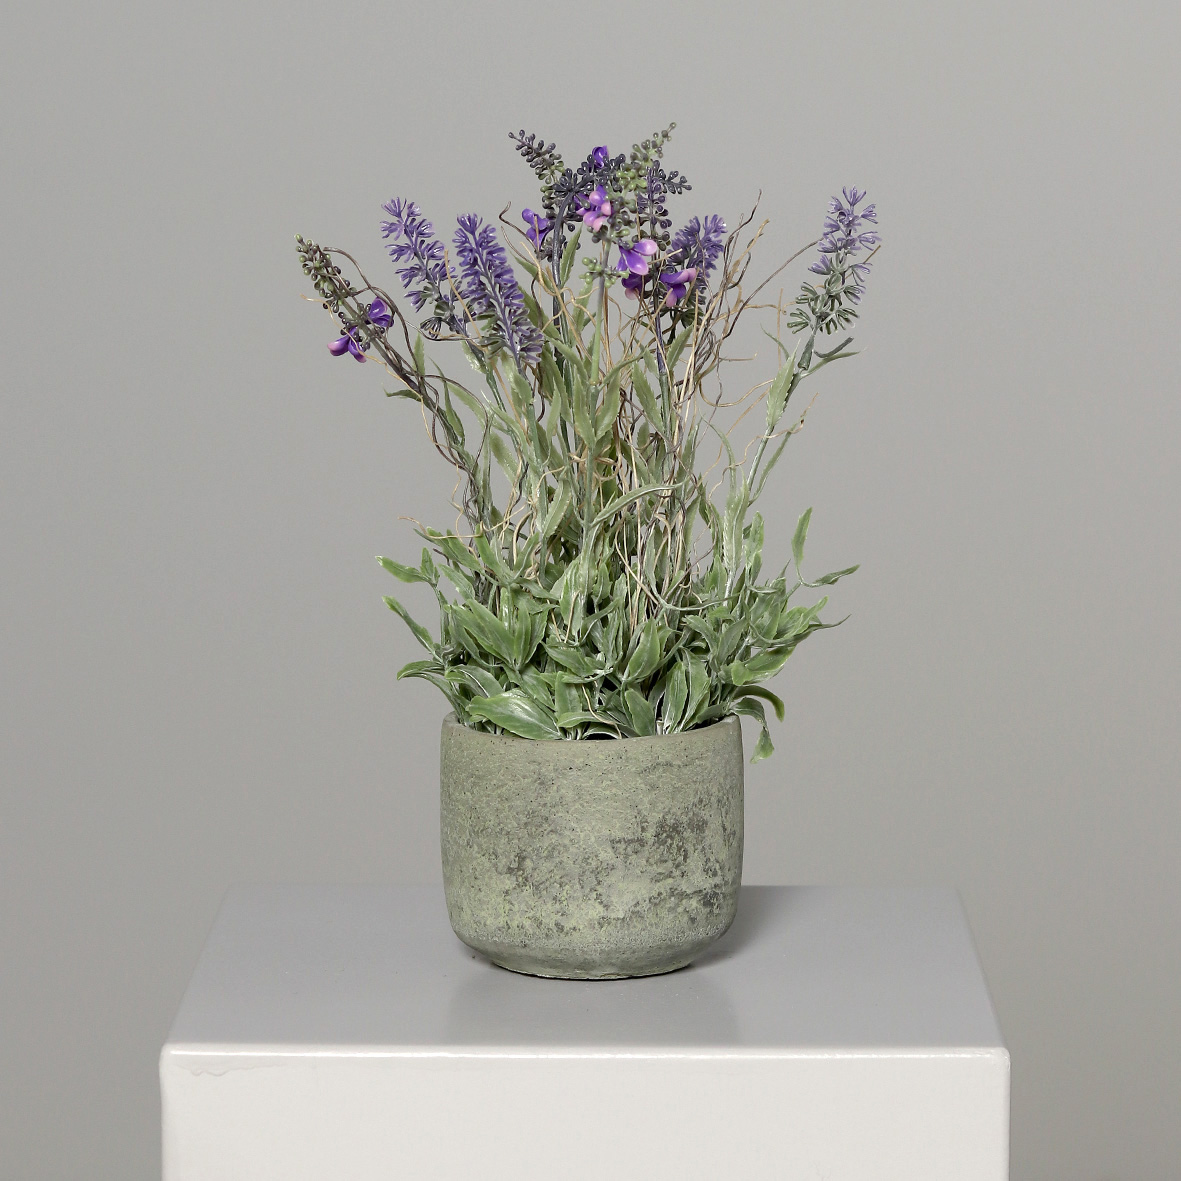 Lavendel im grauen Steintopf 36x24cm DP Kunstblumen Kunstpflanzen künstliche Blumen